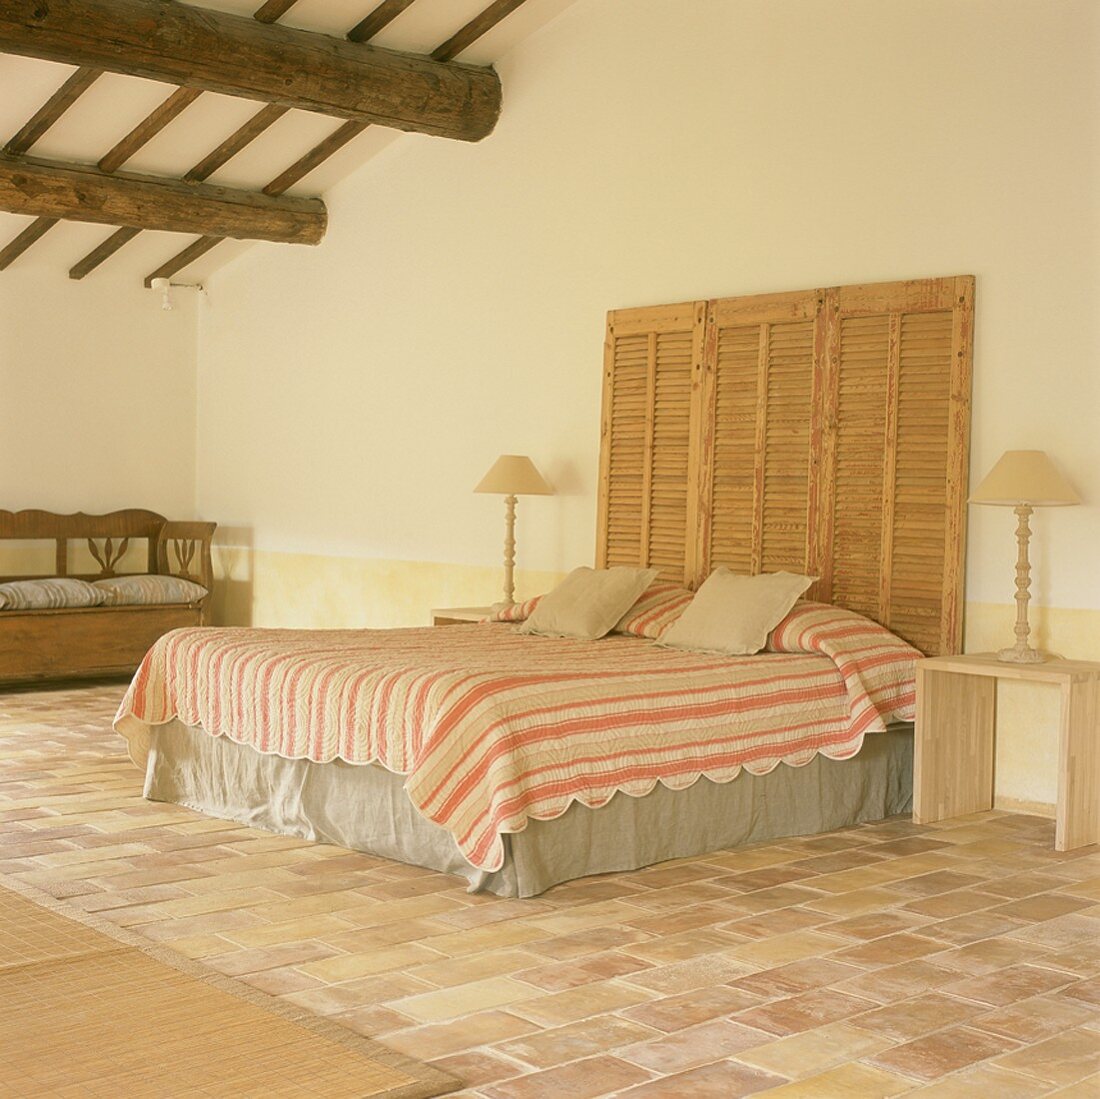 Schlafraum in ausgebautem Dach mit Doppelbett, Nachttischchen, Holzbank & Fliesenboden,